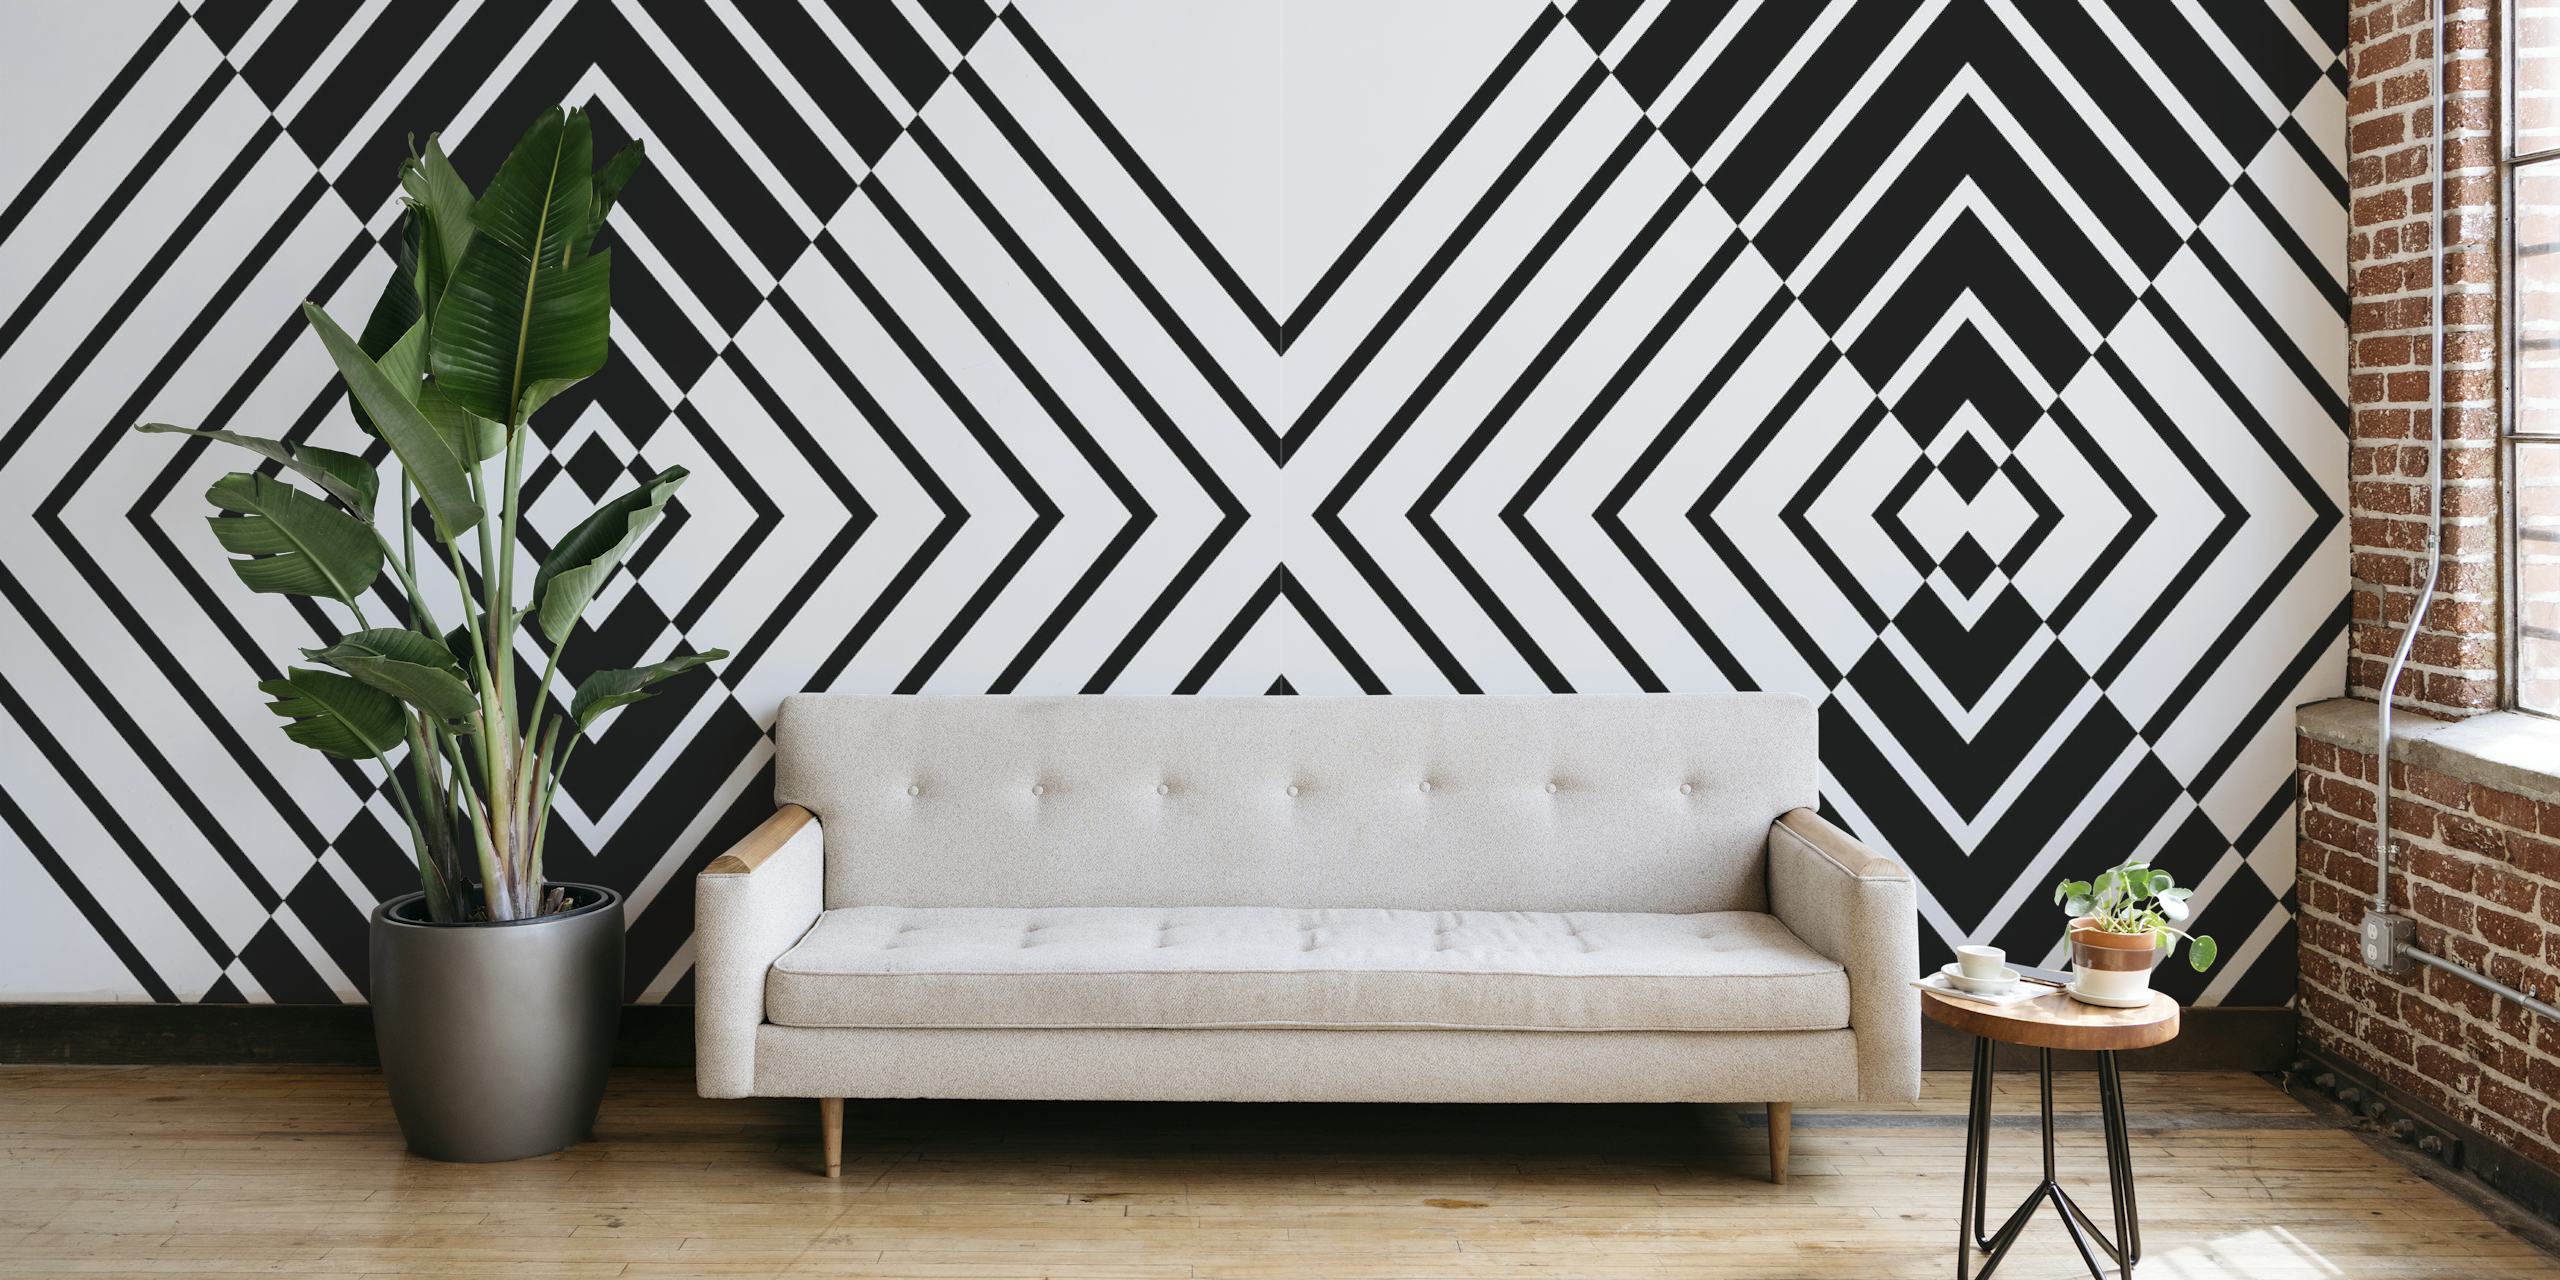 Papier peint mural à motif géométrique noir et blanc créant un design abstrait audacieux